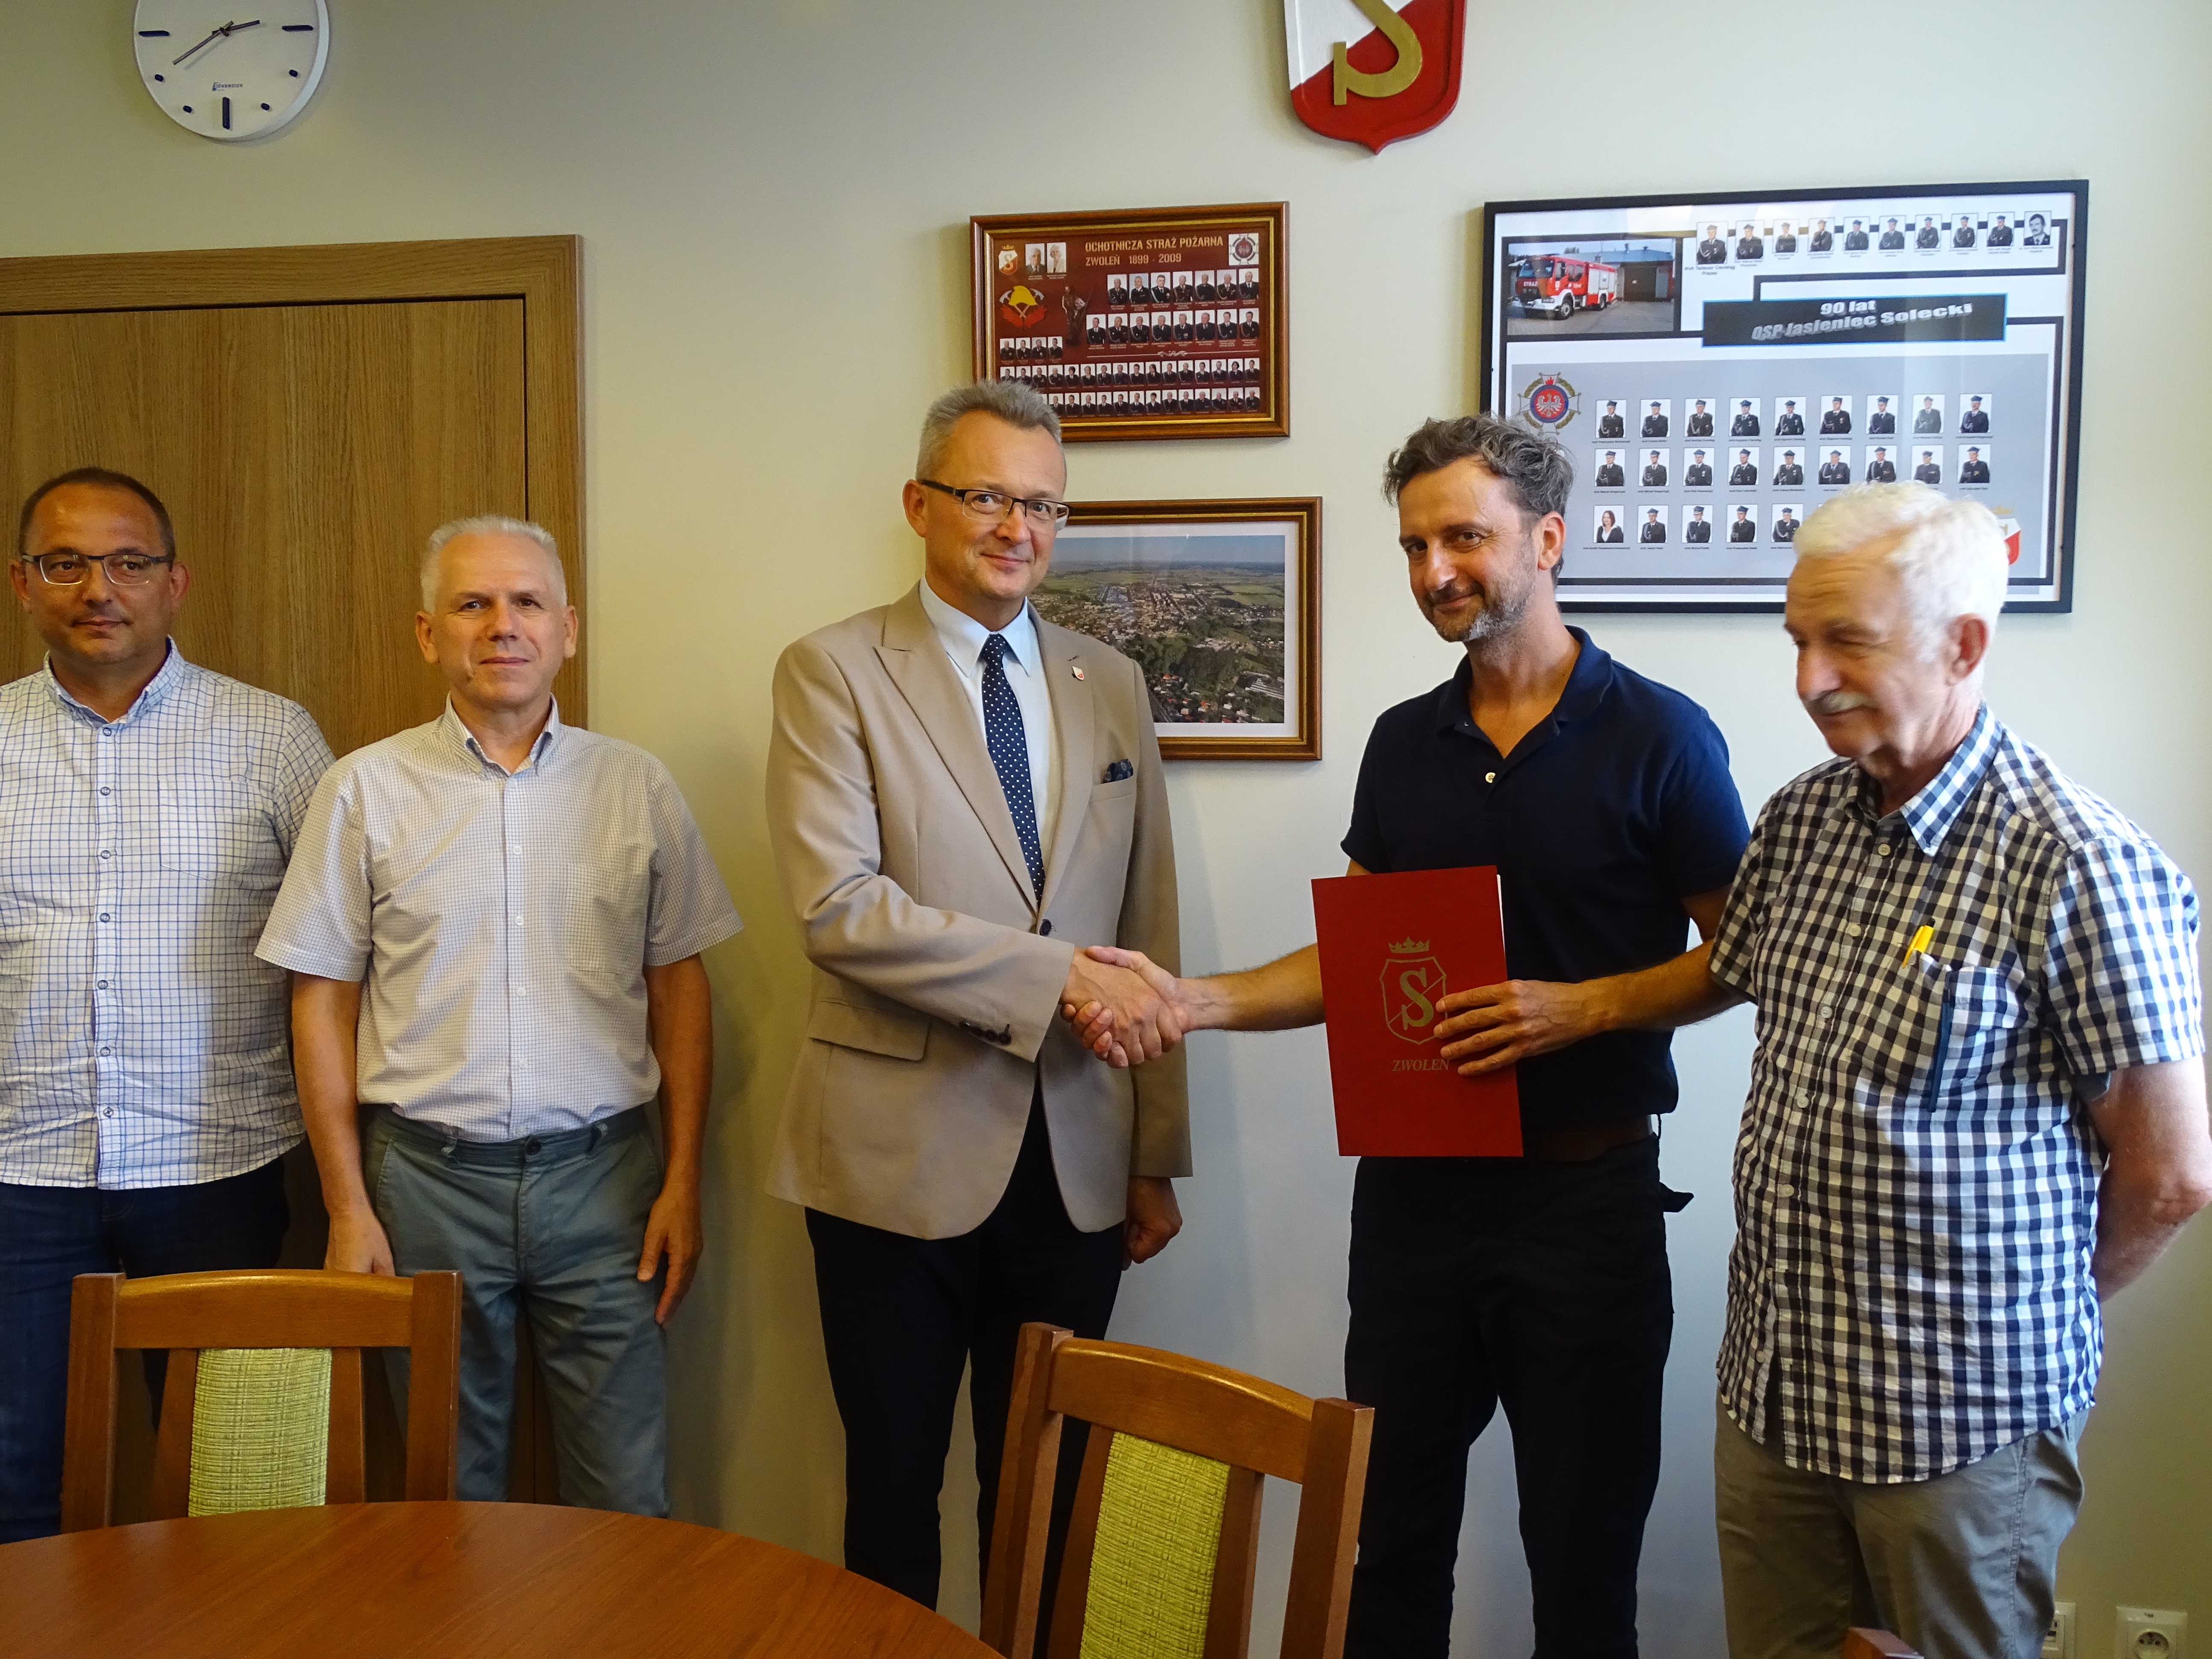 Burmistrz Zwolenia Arkadiusz Sulima ( w środku) przekazał podpisaną umowę wykonawcy (drugi od prawej).